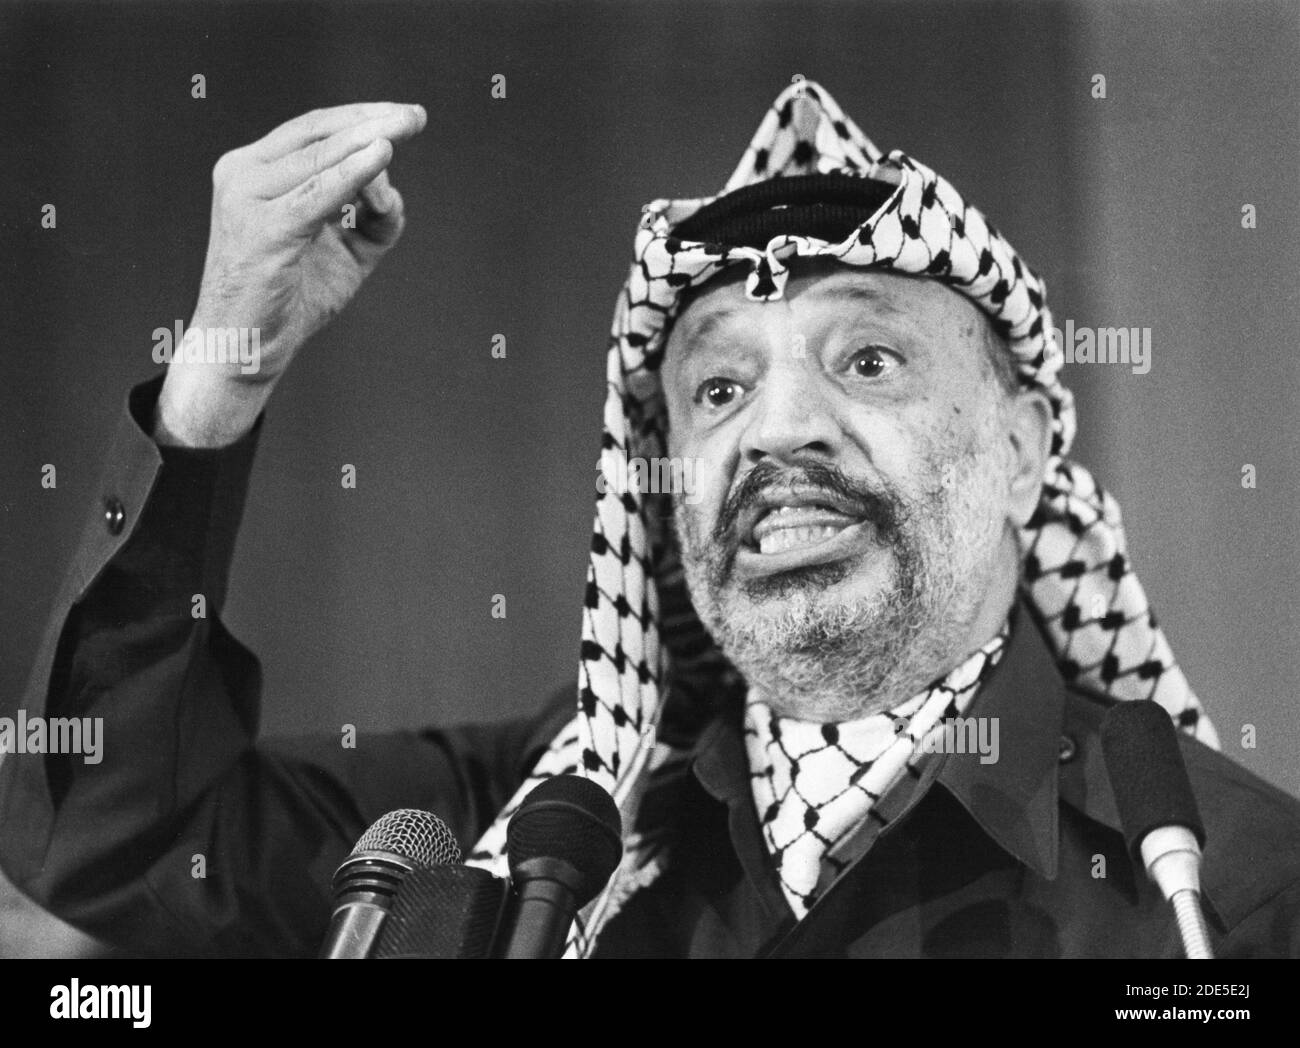 Yasser ARAFAT (Mohammed Yasser Abdel Rahman Abdel Raouf Arafat al-Qudwa), (*24 agosto 1929 / +11 novembre 2004), è stato un leader palestinese di primaria importanza. È stato Presidente dell'Organizzazione per la Liberazione della Palestina (OLP), Presidente dell'autorità Nazionale Palestinese (PNA), e leader del partito politico Fatah e dell'ex gruppo paramilitare, che ha fondato nel 1959. Fotografato nel maggio 1988 a Tripolis, Libia. Foto Stock